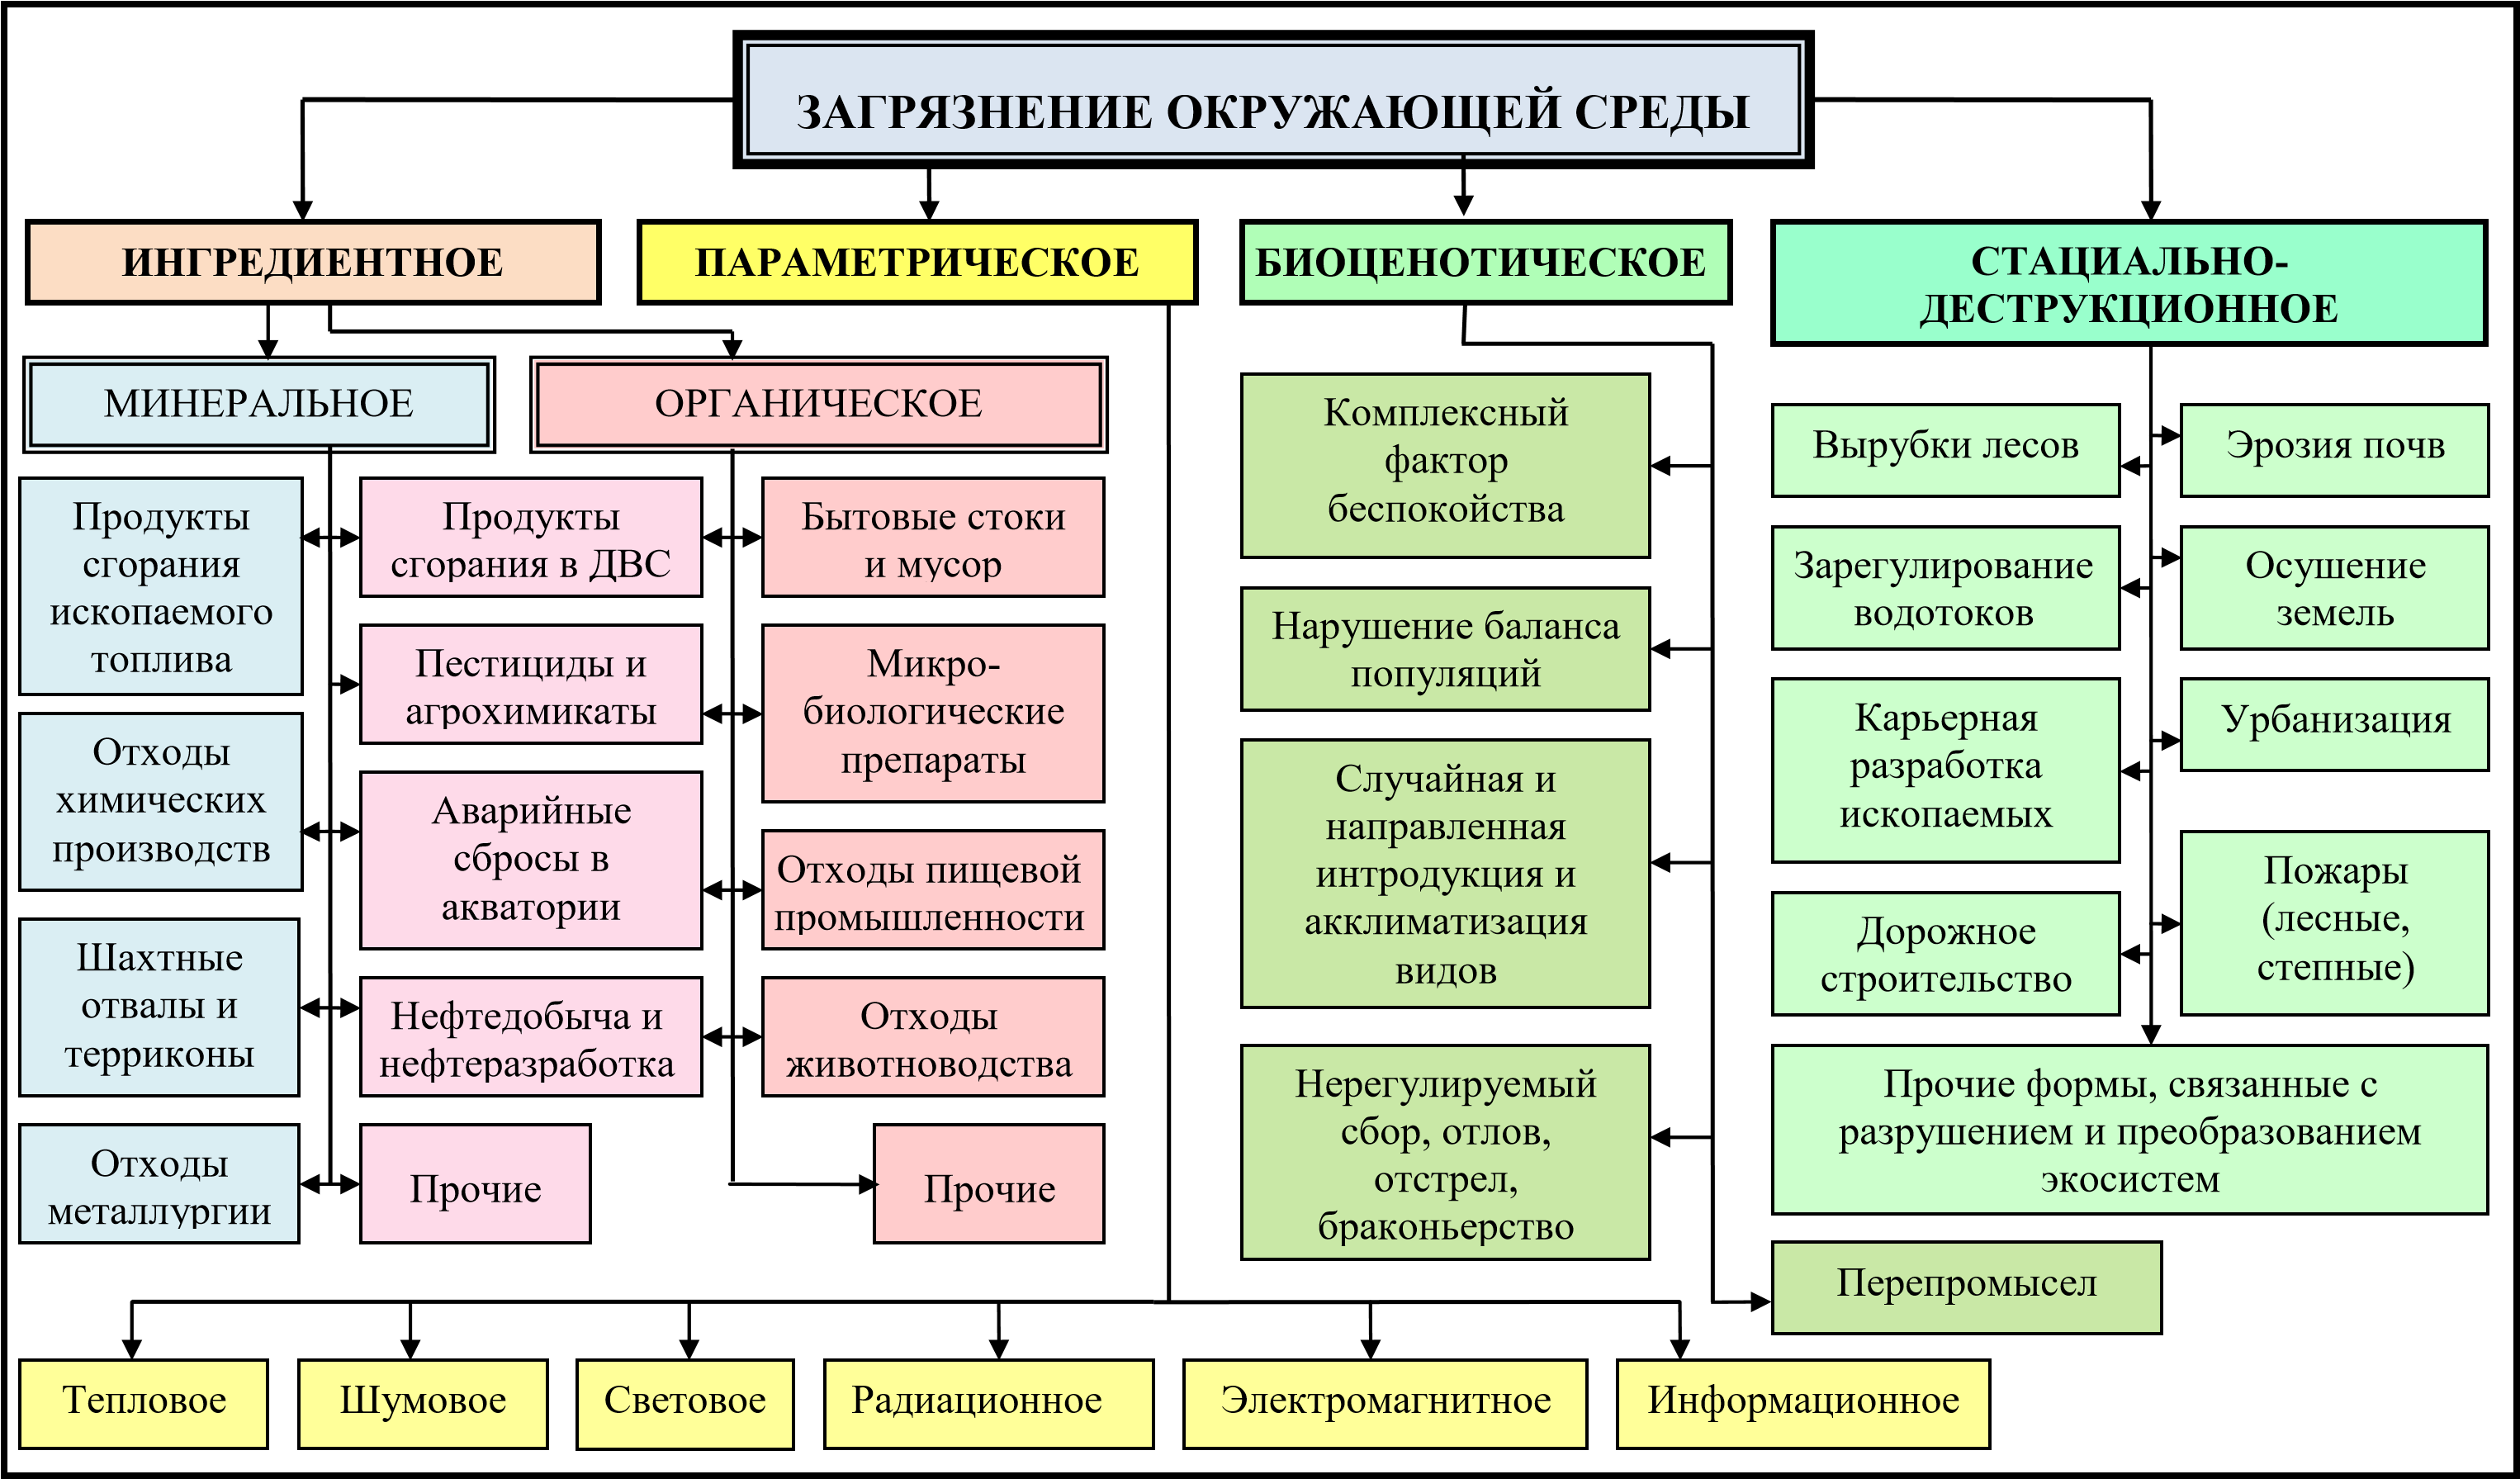 Экологическая безопасность россии таблица